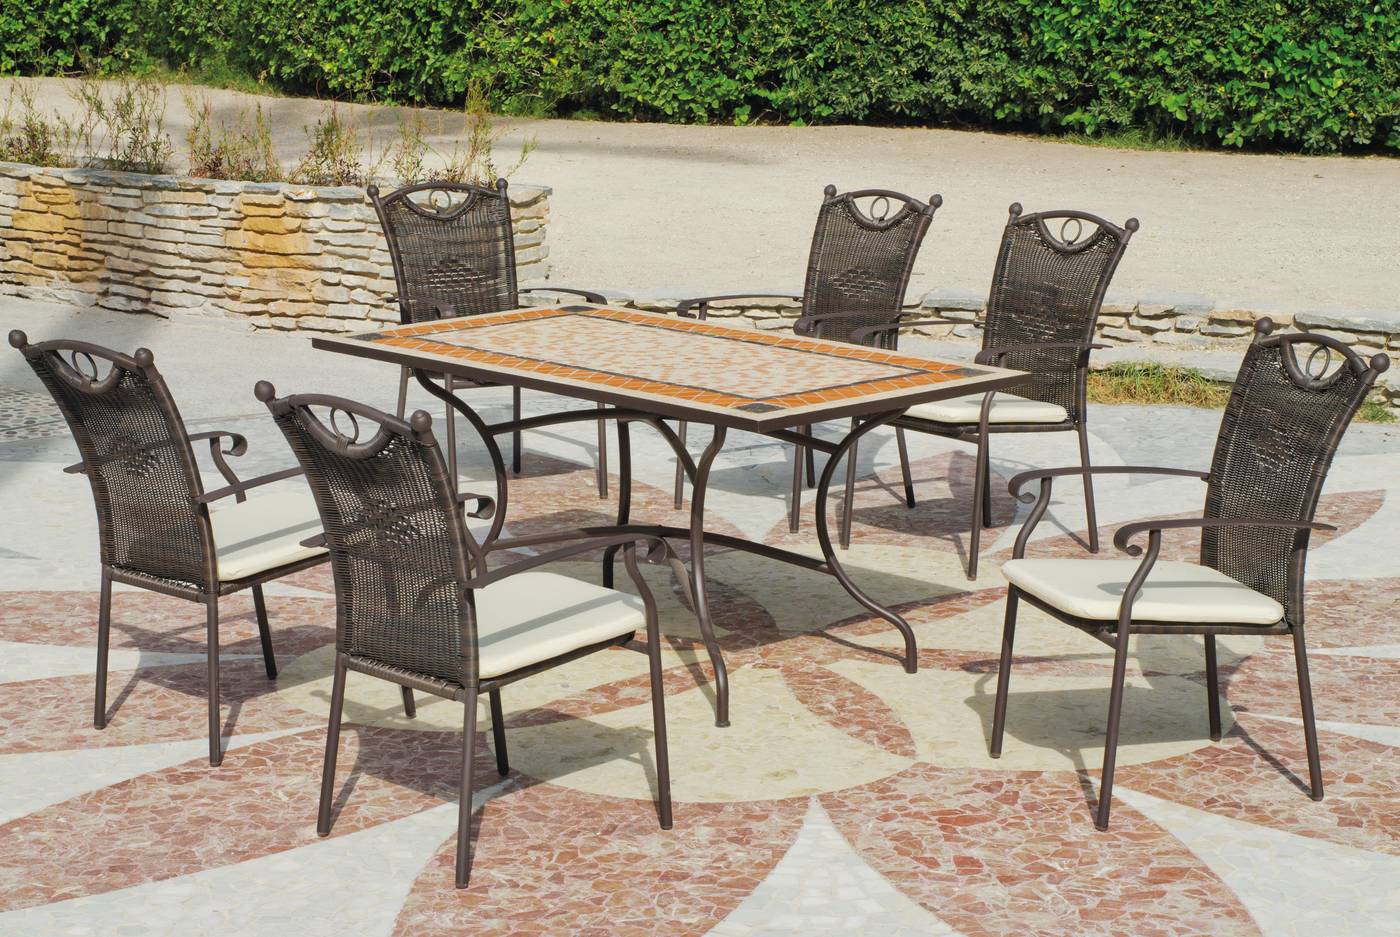 Conjunto para terraza o jardín de forja color bronce: 1 mesa + 6 sillones + 6 cojines. Mesa válida para 8 sillones.